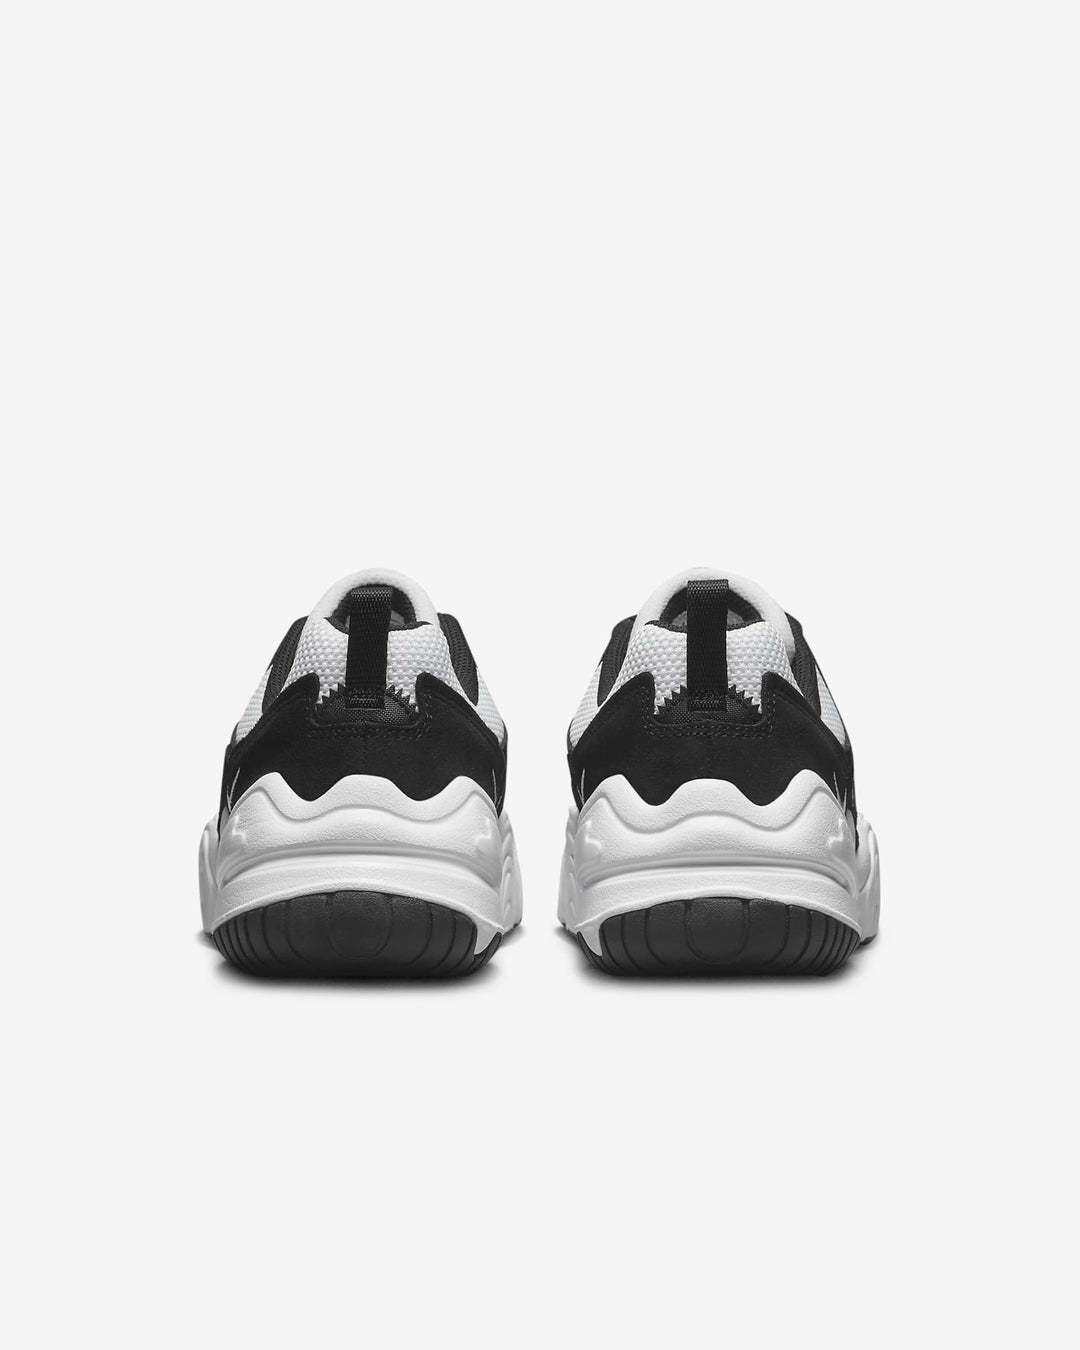 Giày Nike Tech Hera Men Shoes #White Black - Kallos Vietnam